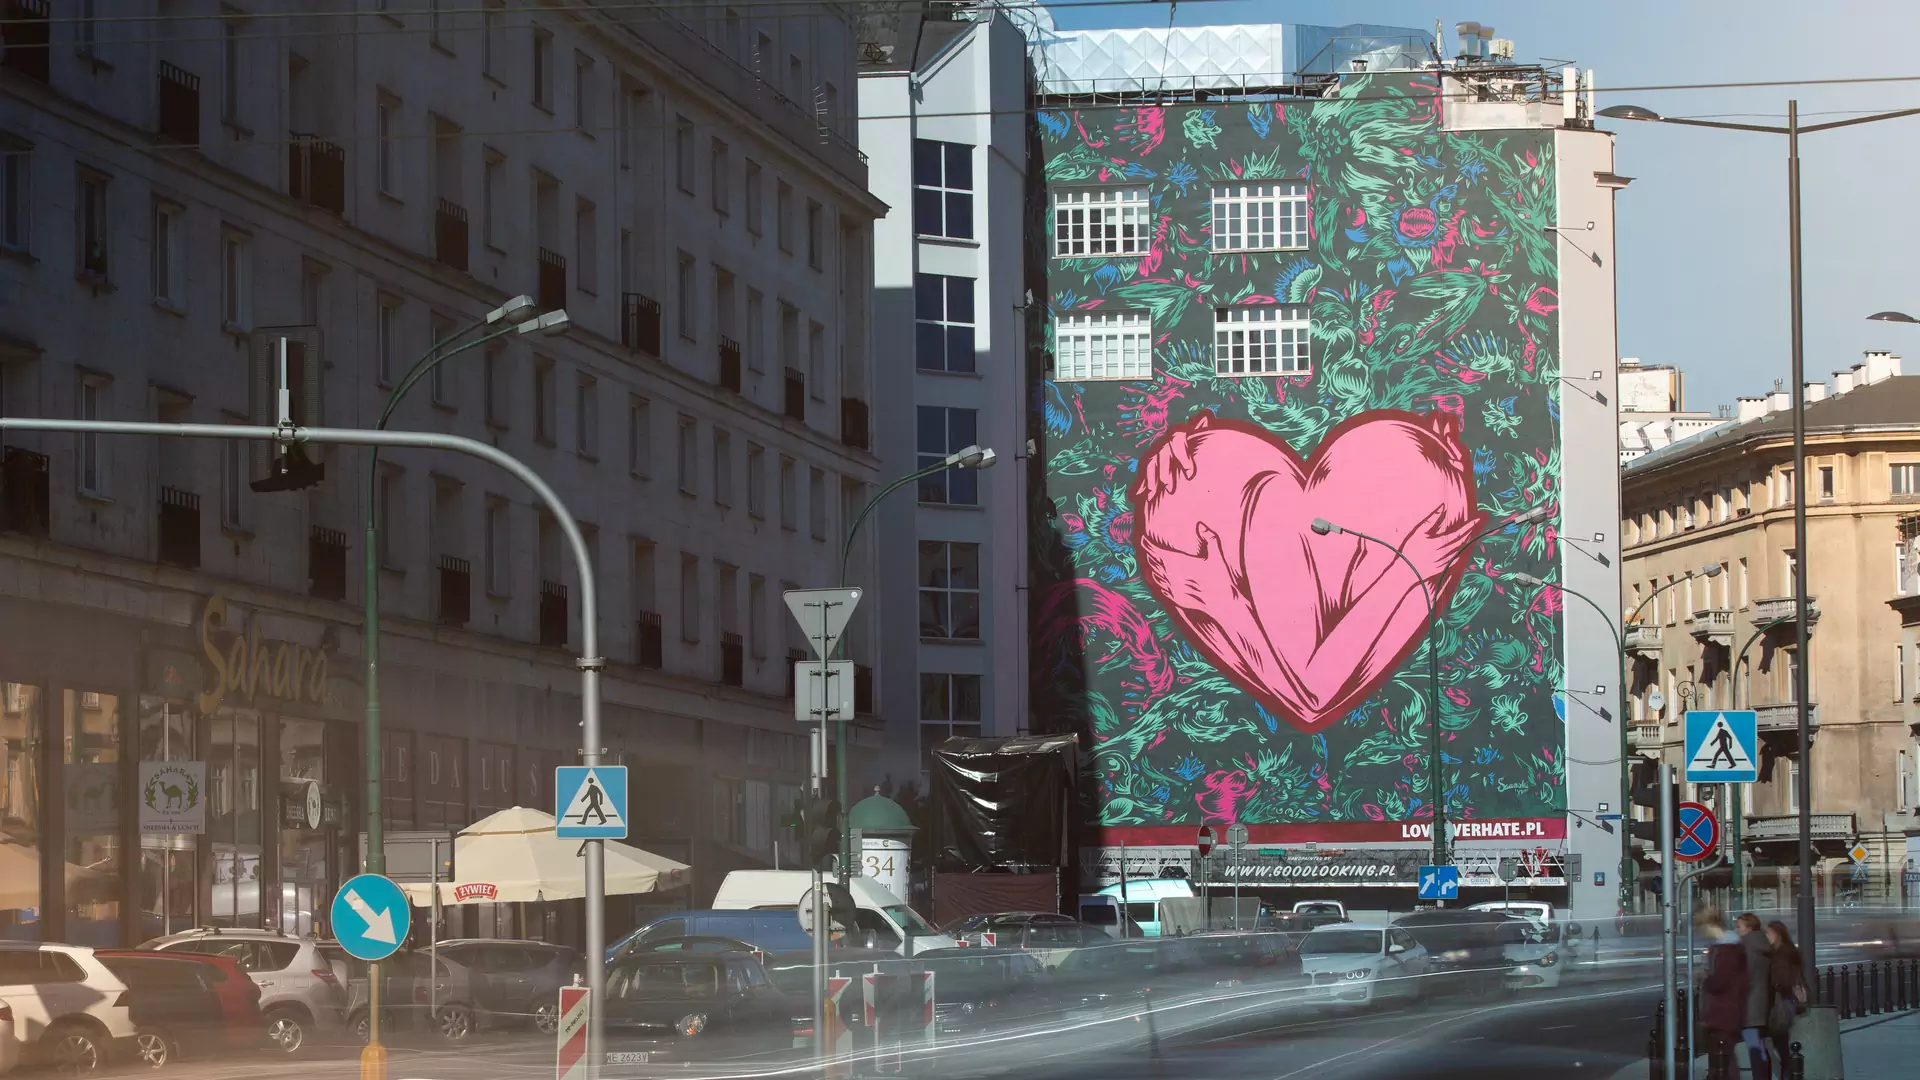 "Warto pokochać  najpierw siebie, bo wtedy łatwiej jest otworzyć się na innych" - rozmawiamy z autorem murala Love Over Hate